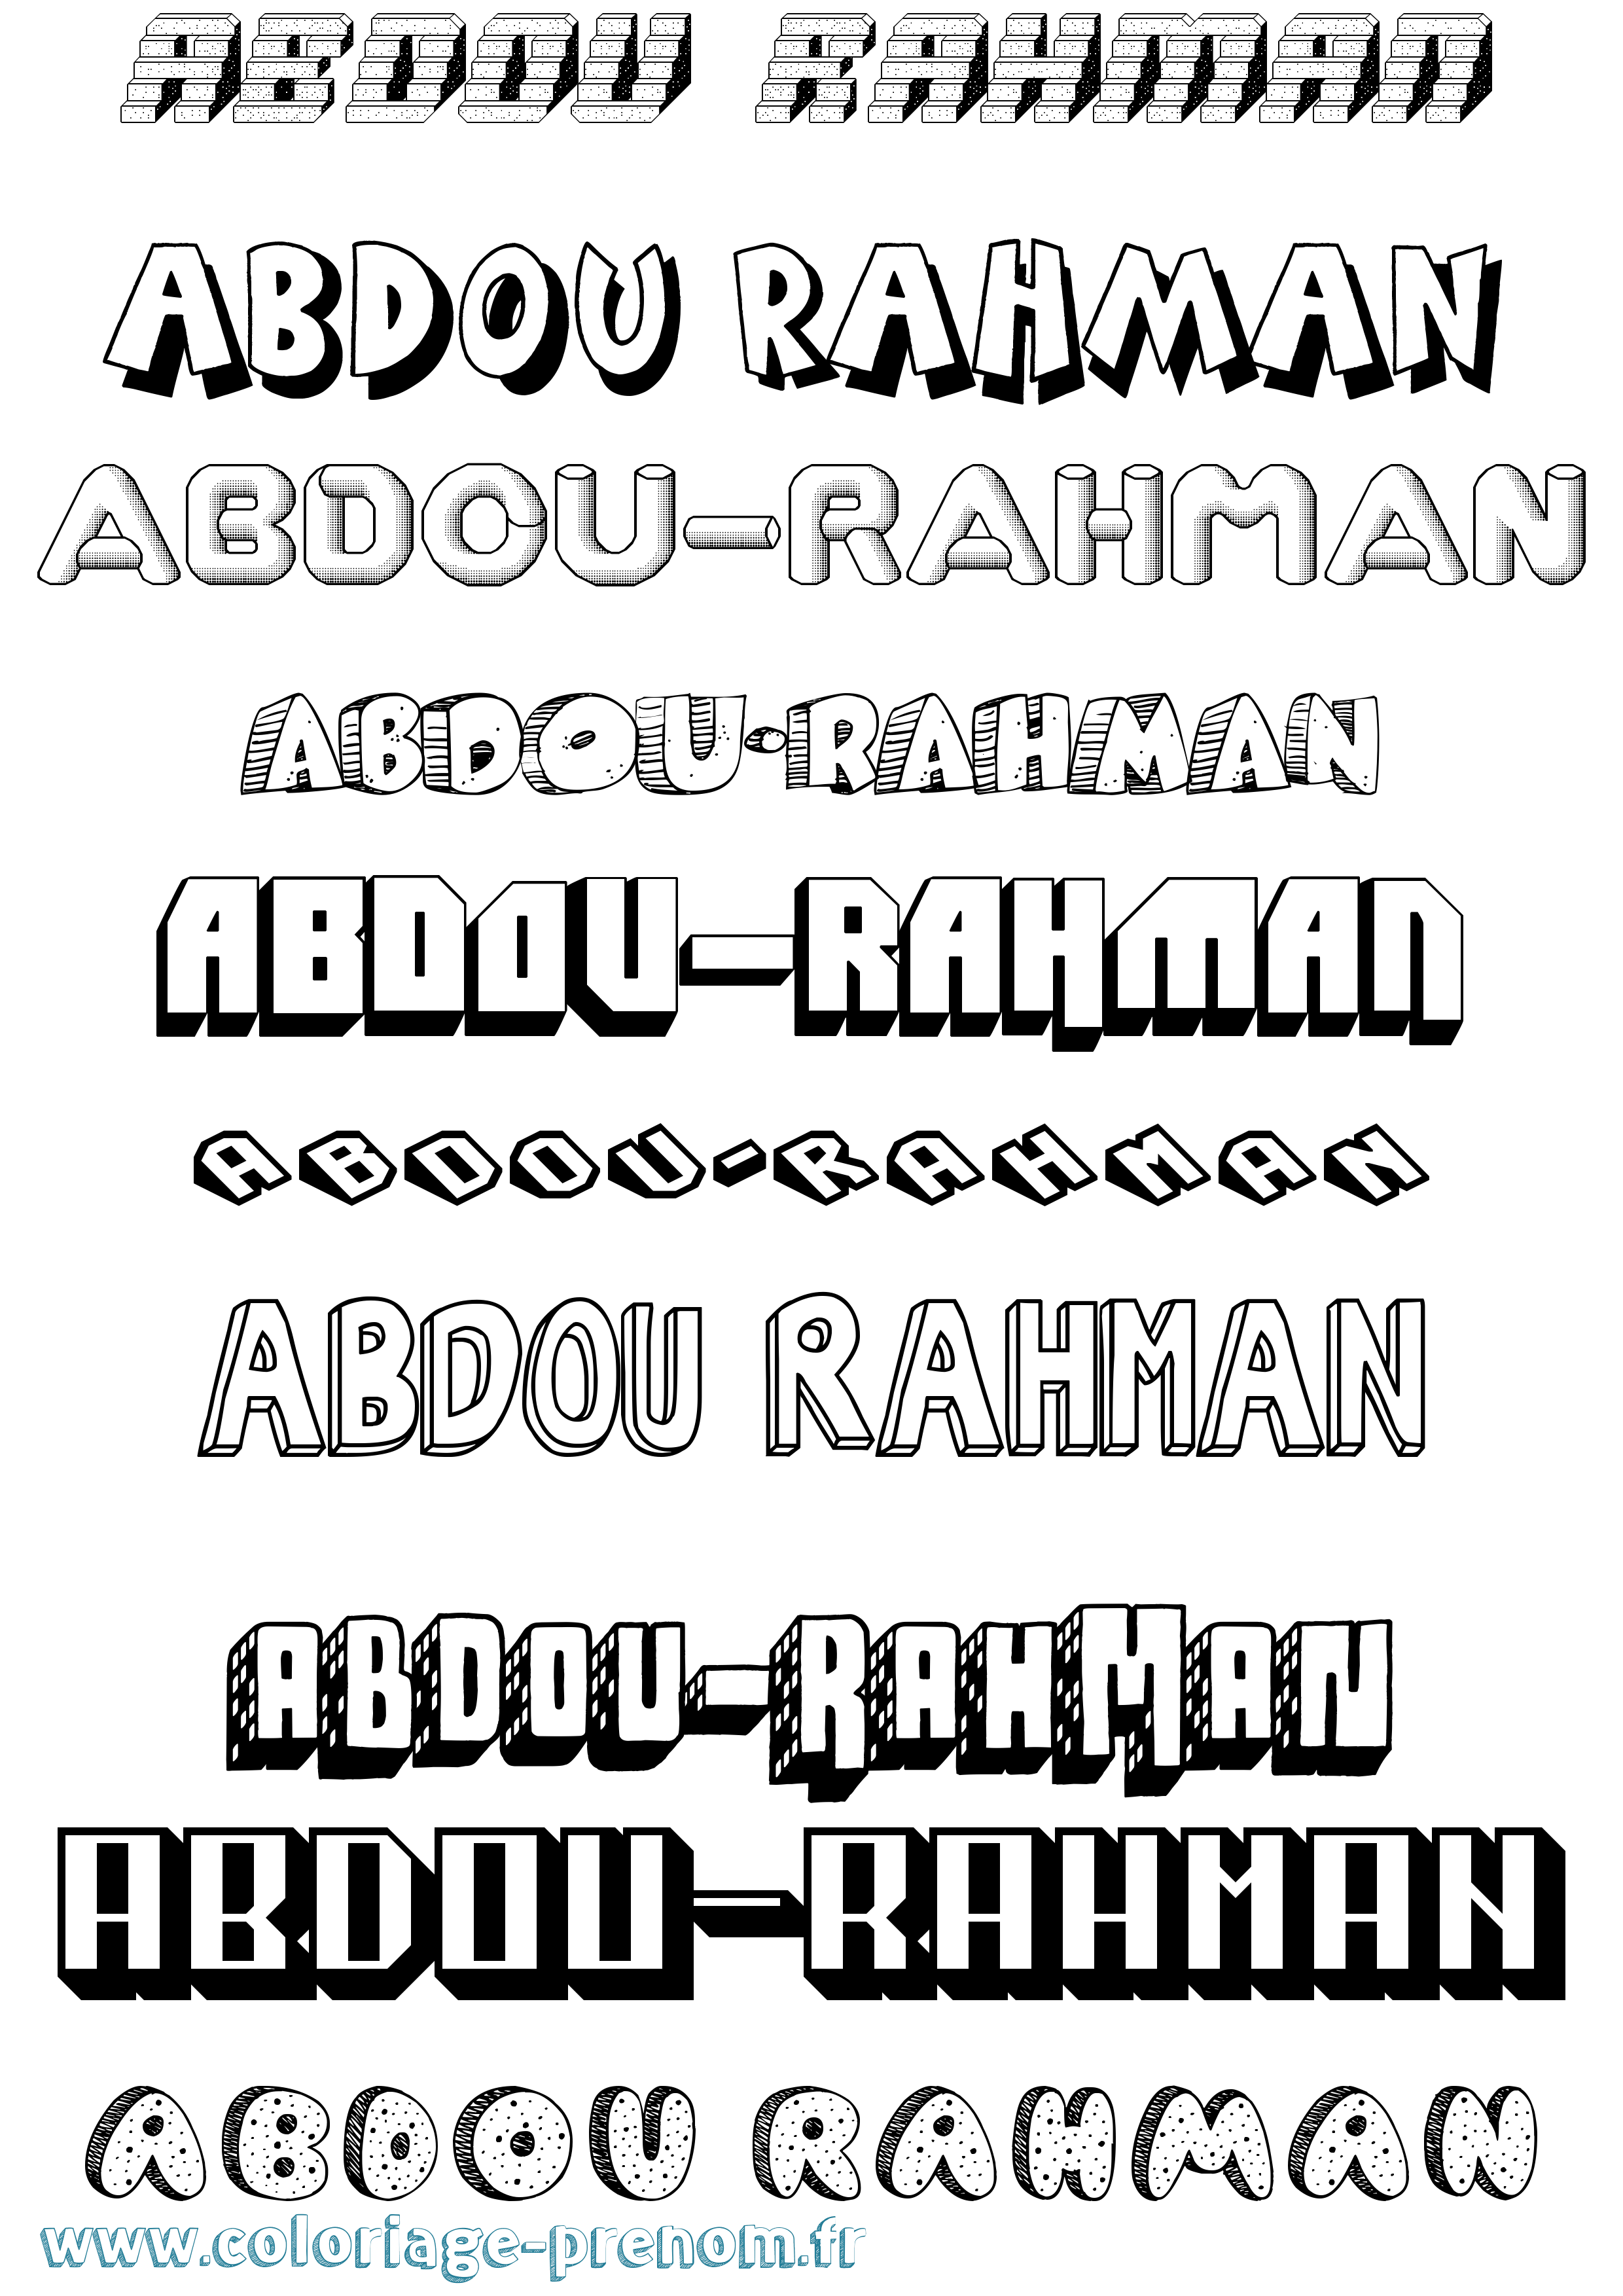 Coloriage prénom Abdou-Rahman Effet 3D